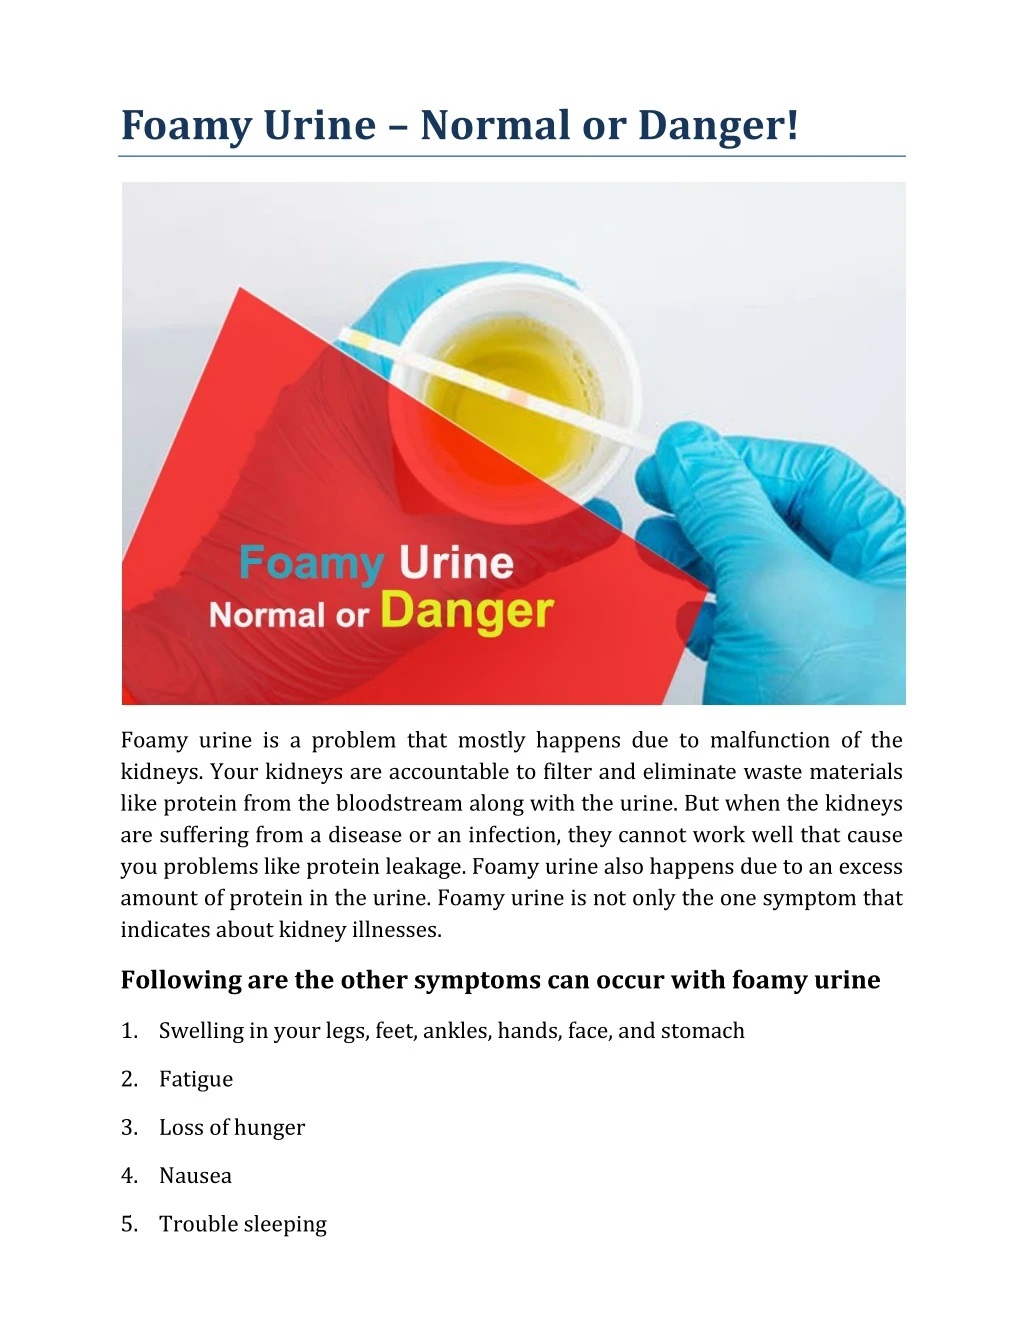 foamy urine normal or danger